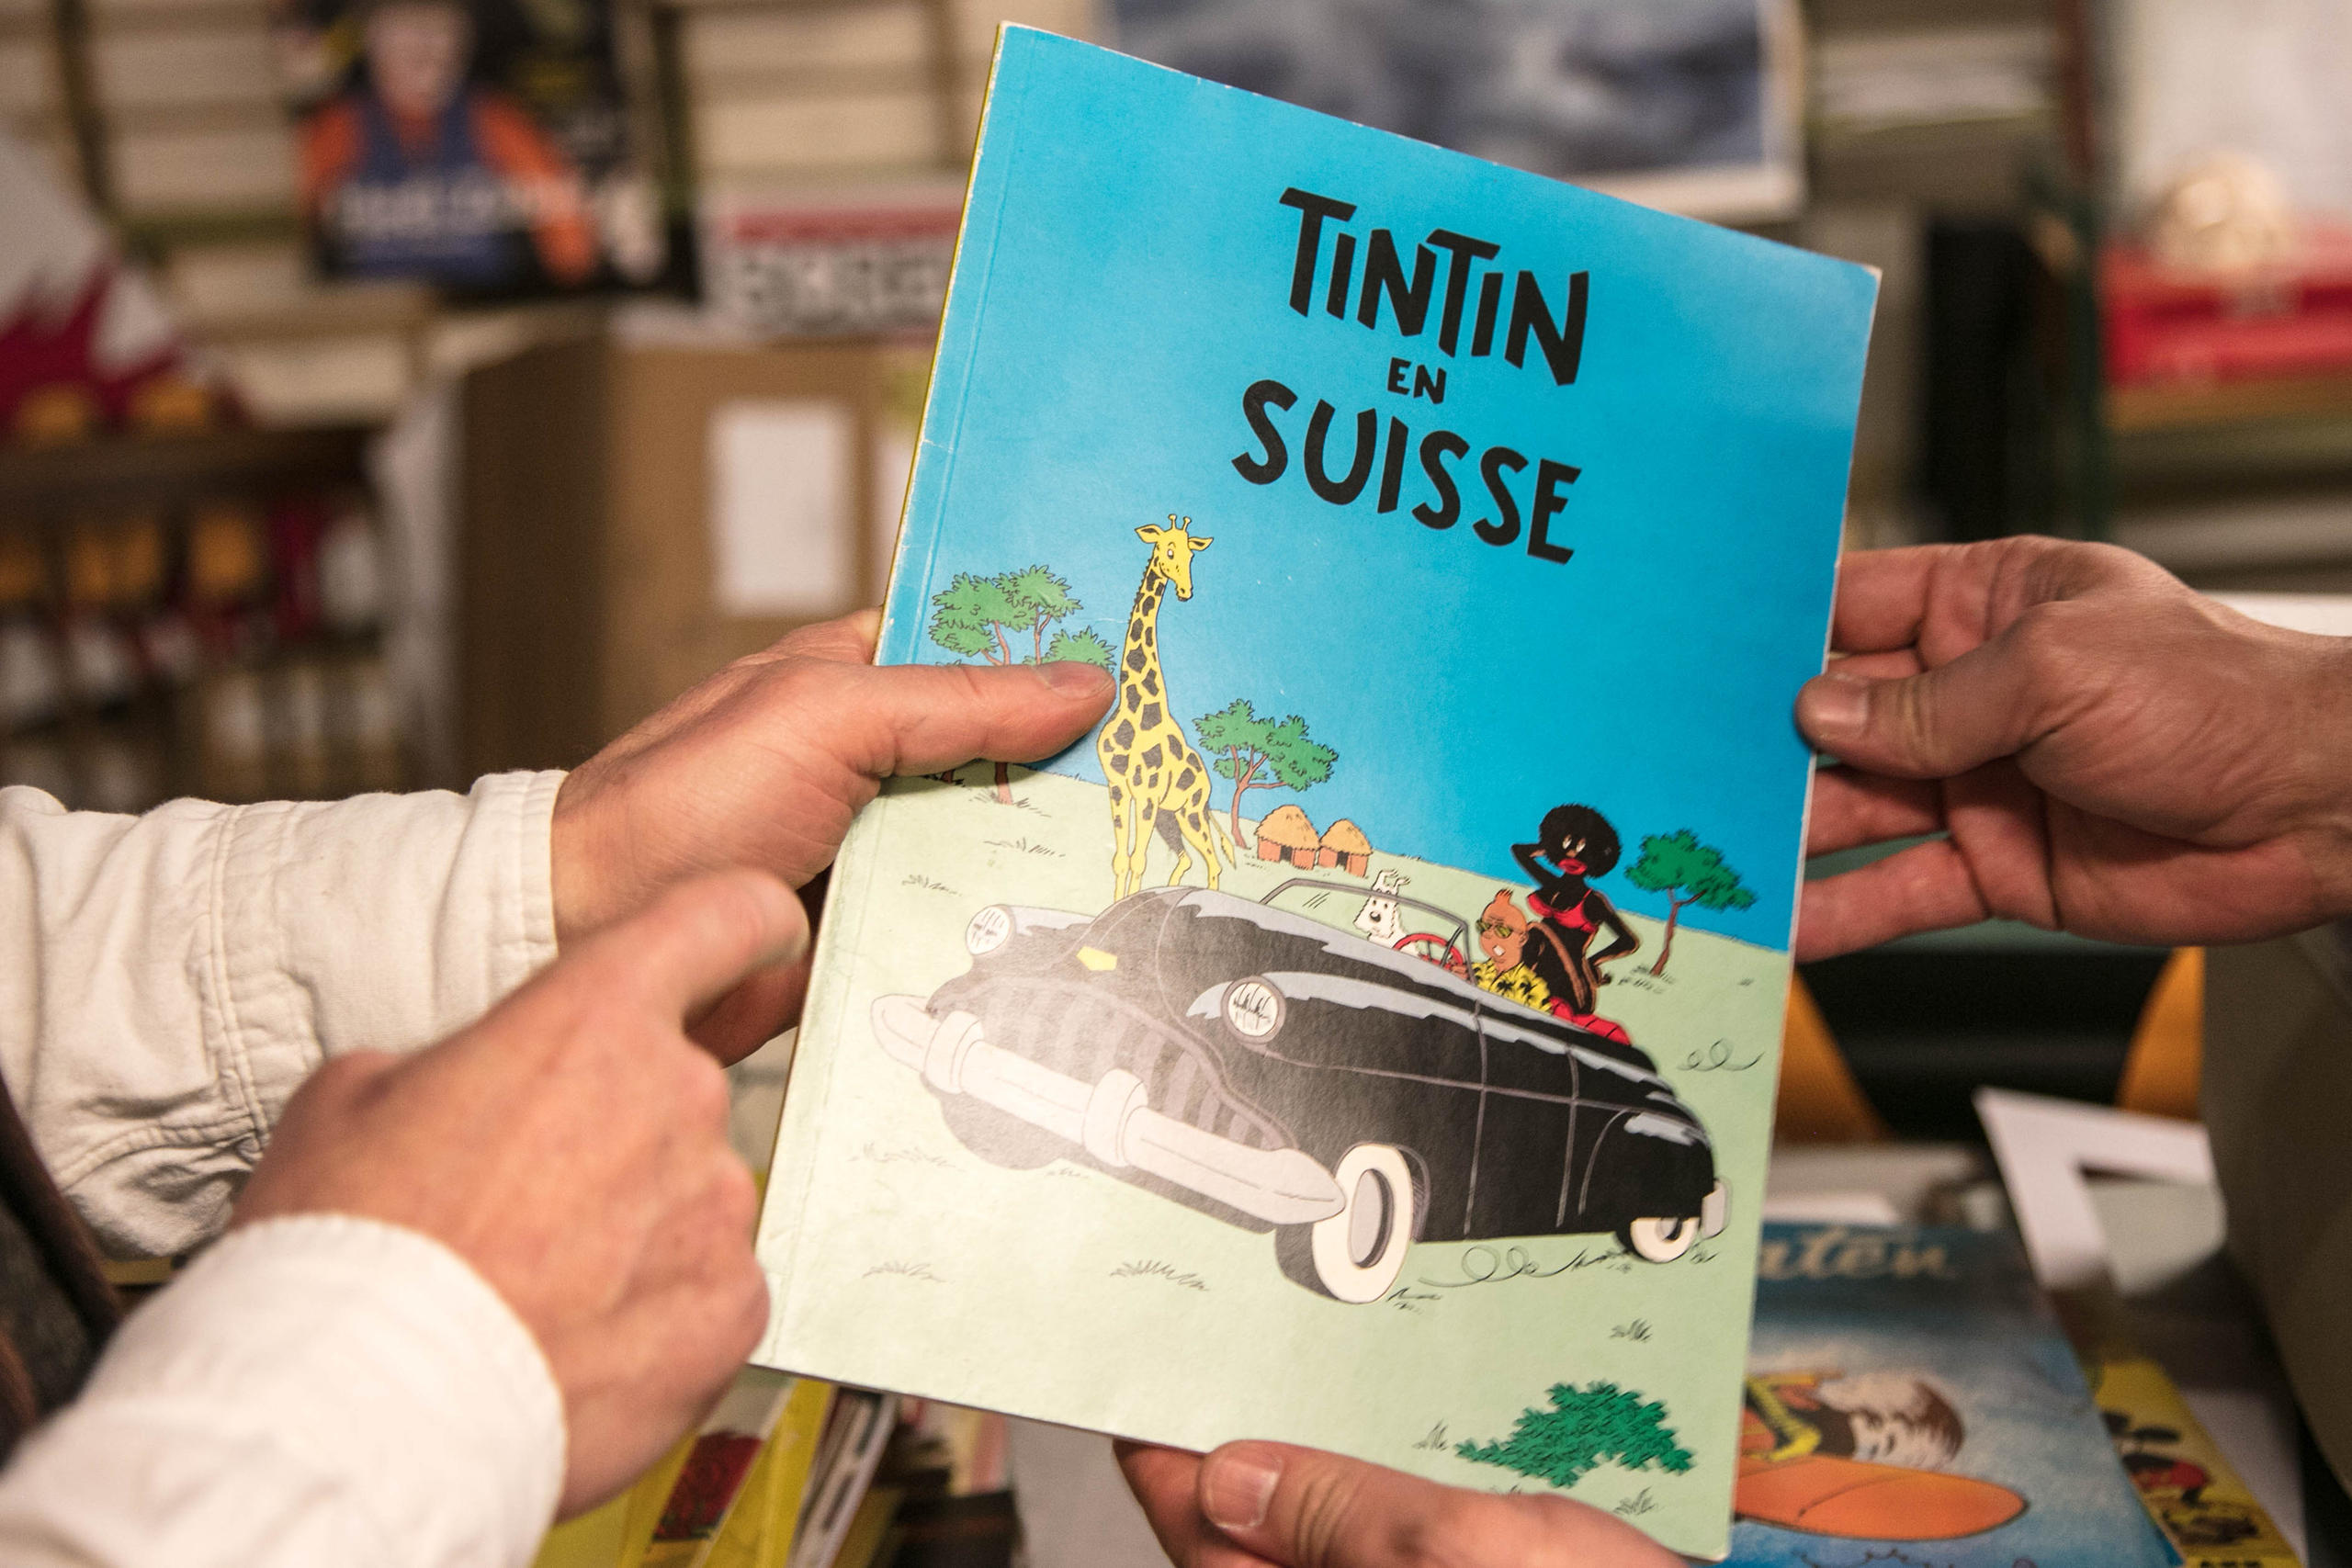 Versão pirata de Tintin, publicada na Holanda na década de 1980.